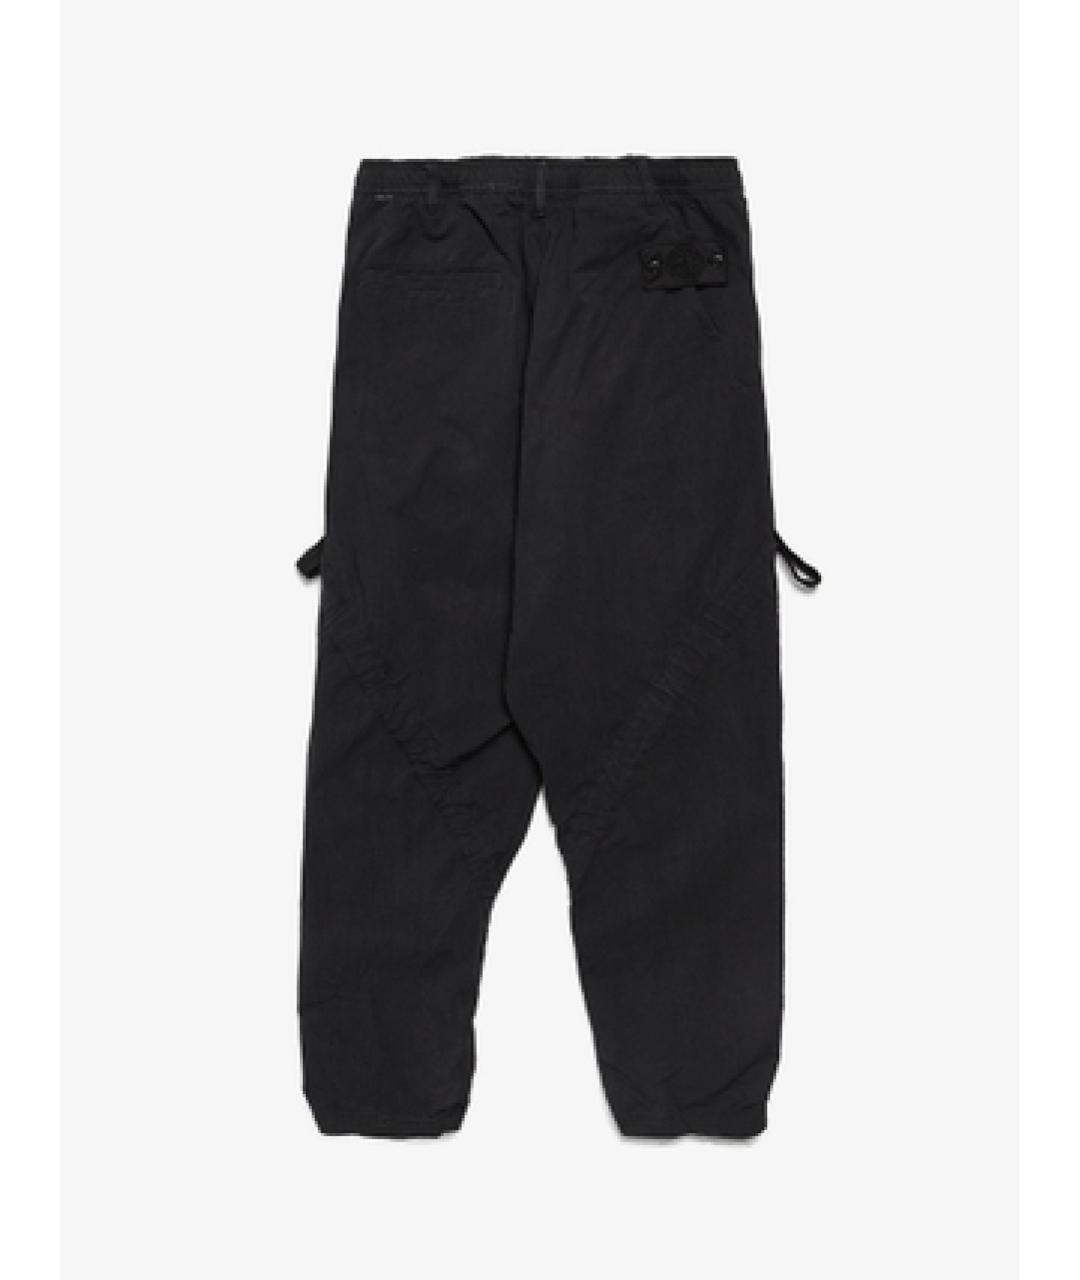 STONE ISLAND SHADOW PROJECT Черные полиамидовые повседневные брюки, фото 2